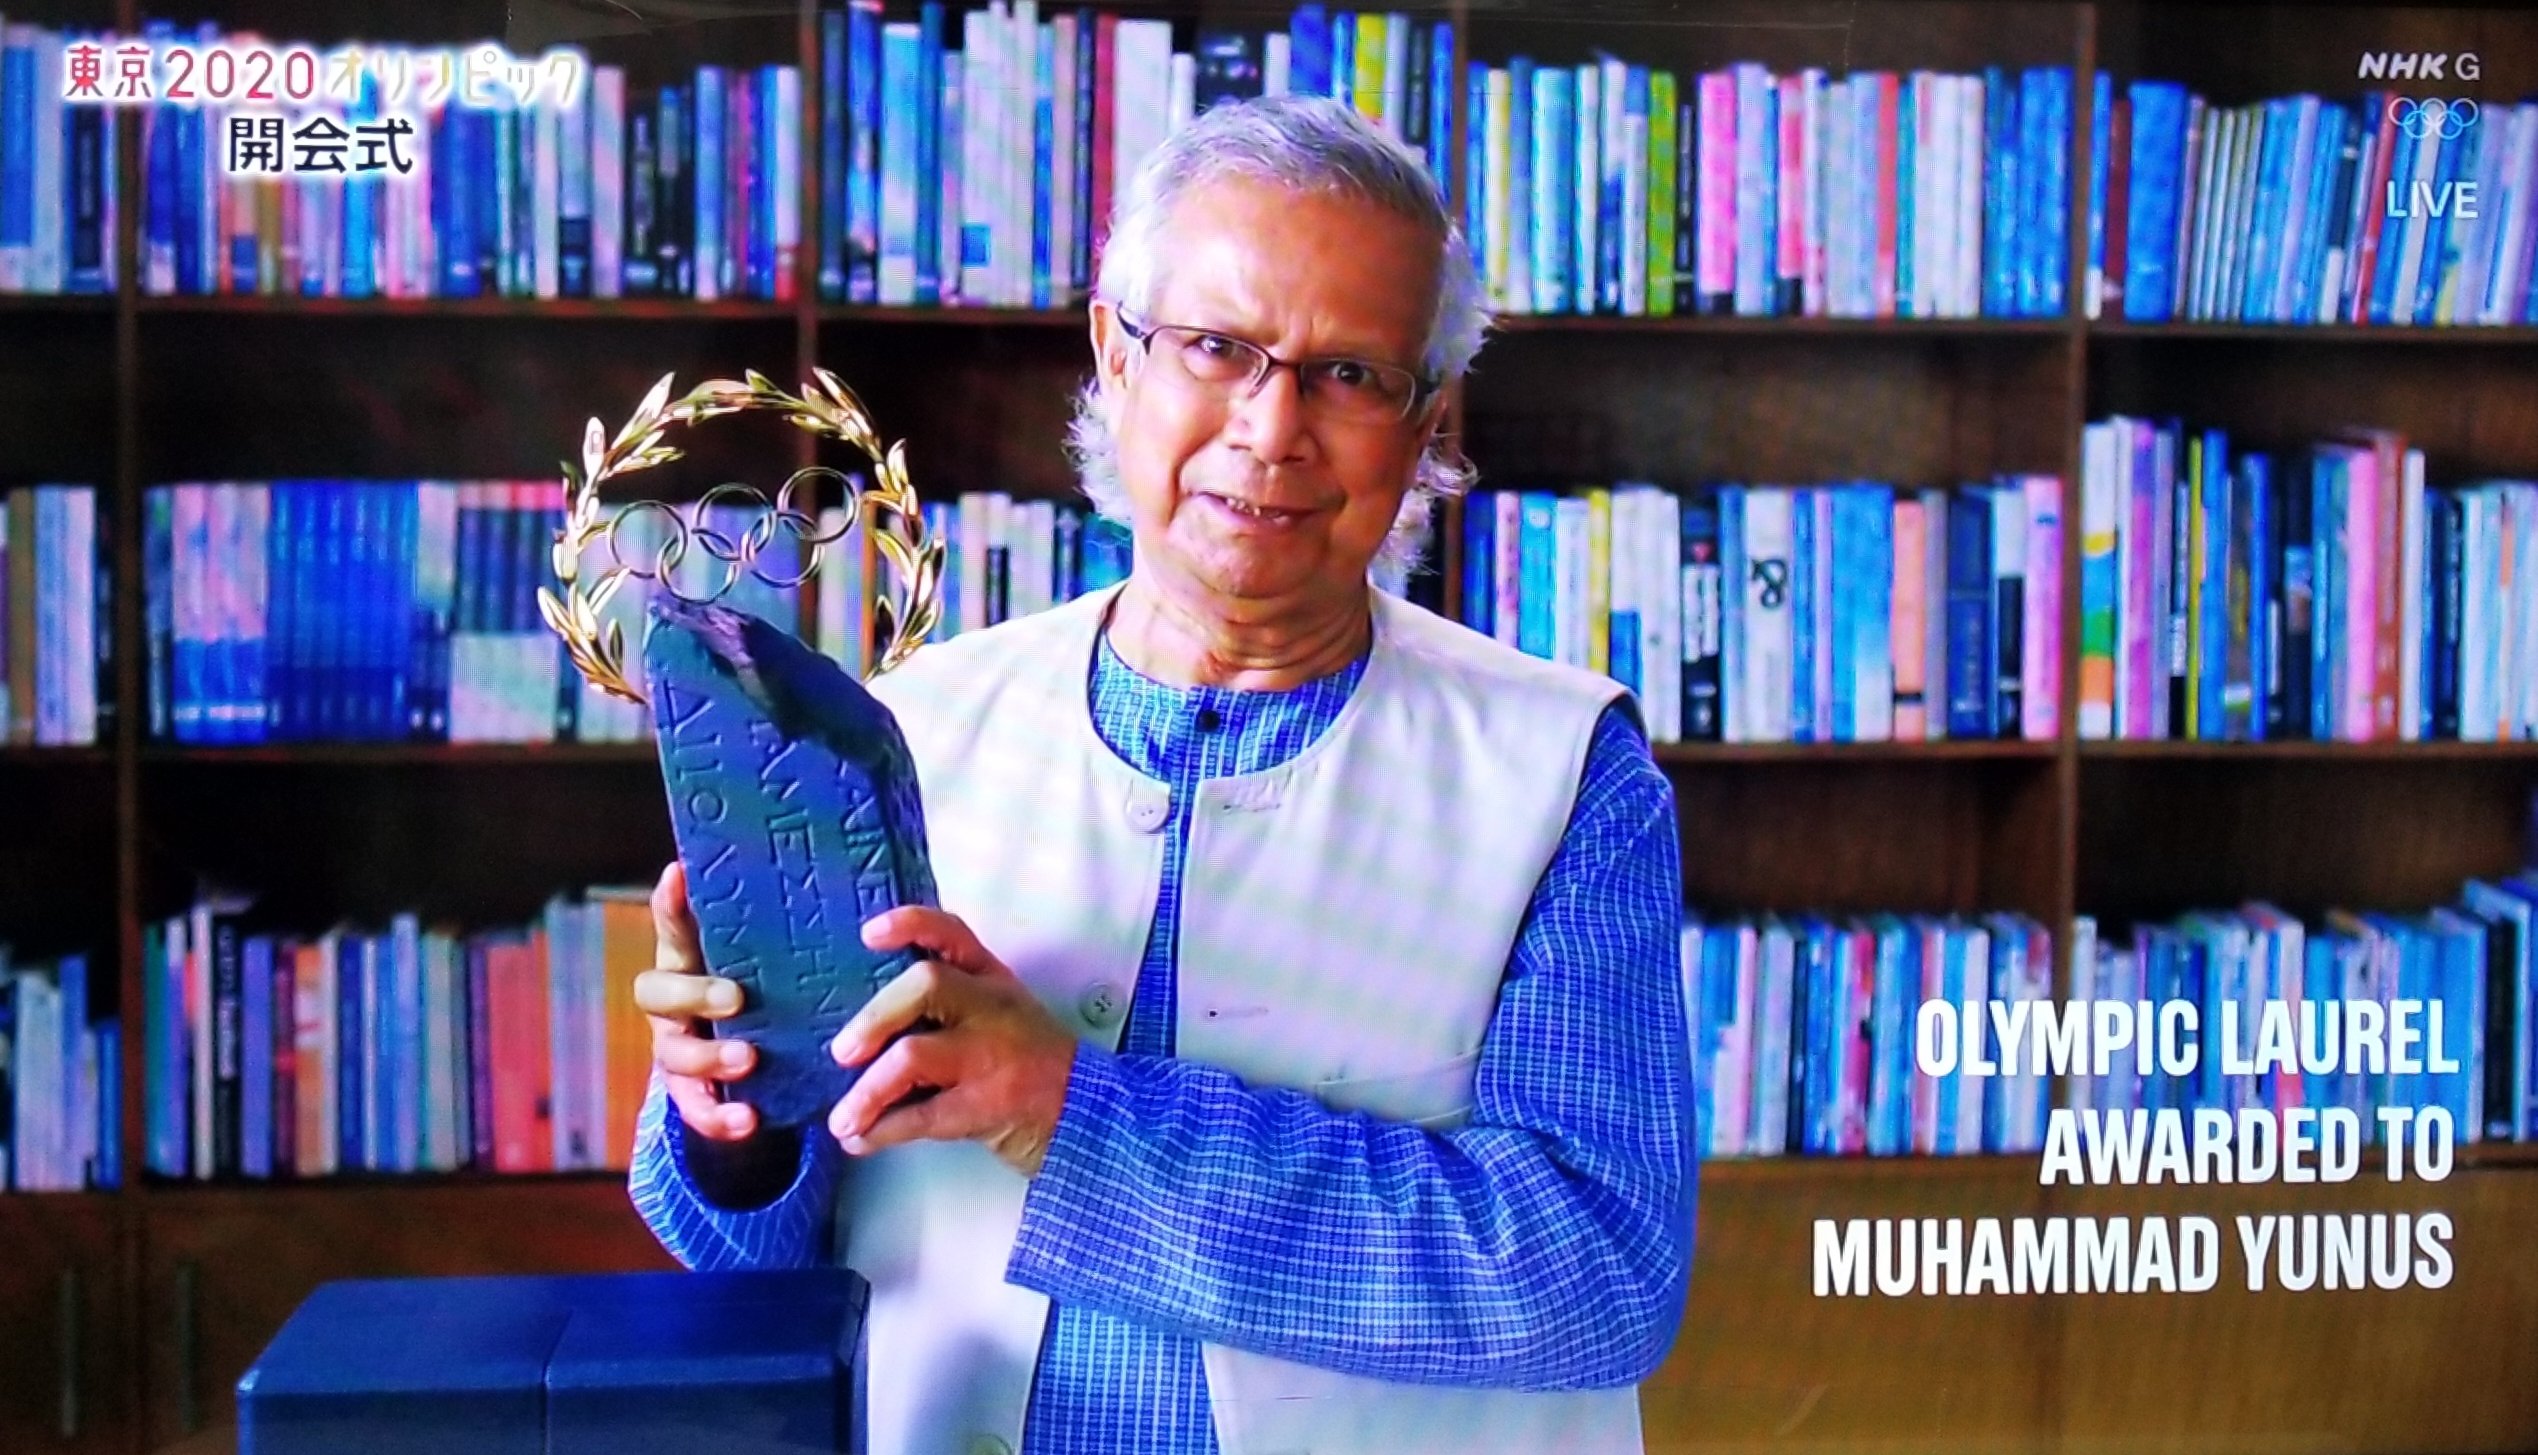 バングラデシュのノーベル平和賞受賞のユヌス氏、東京五輪開会式でオリンピック月桂冠賞を受賞